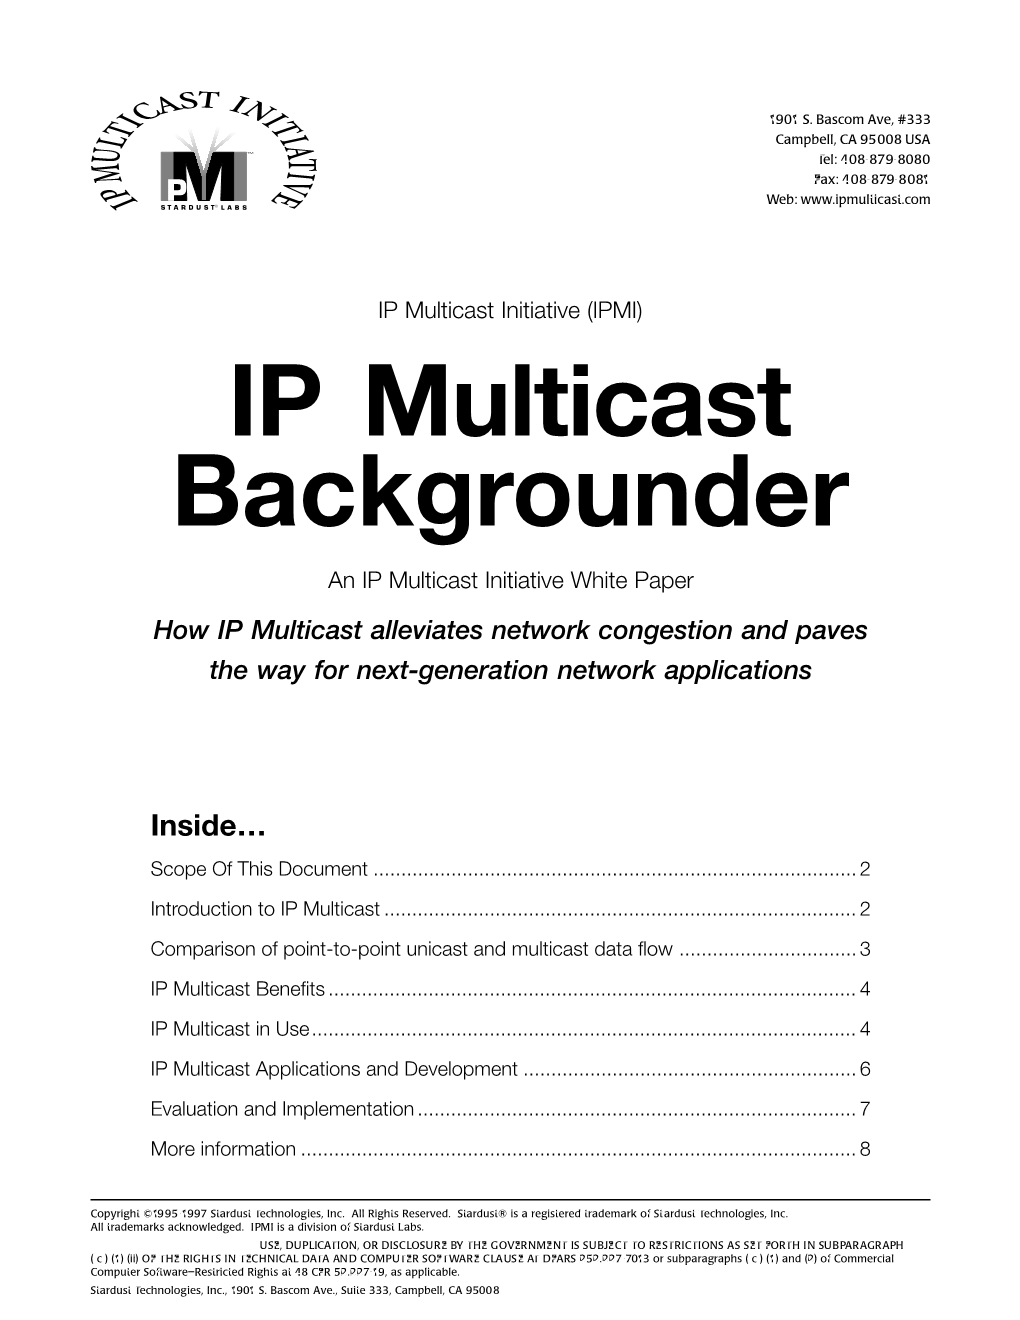 IP Multicast Backgrounder